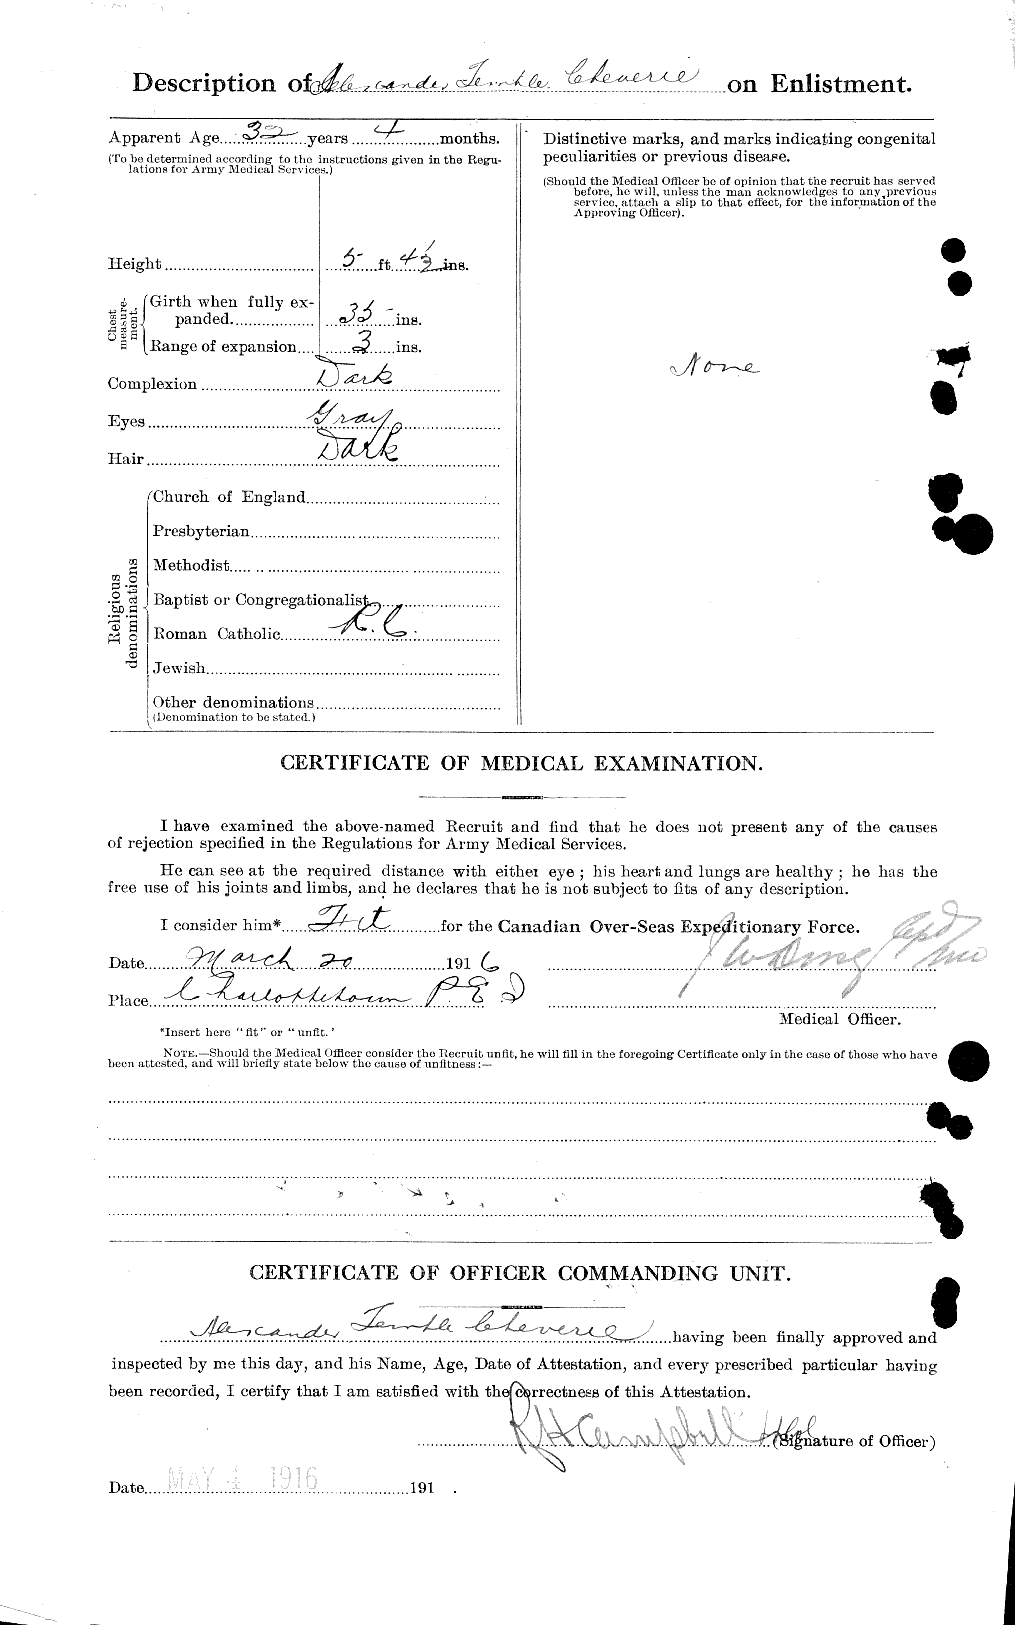 Dossiers du Personnel de la Première Guerre mondiale - CEC 017813b